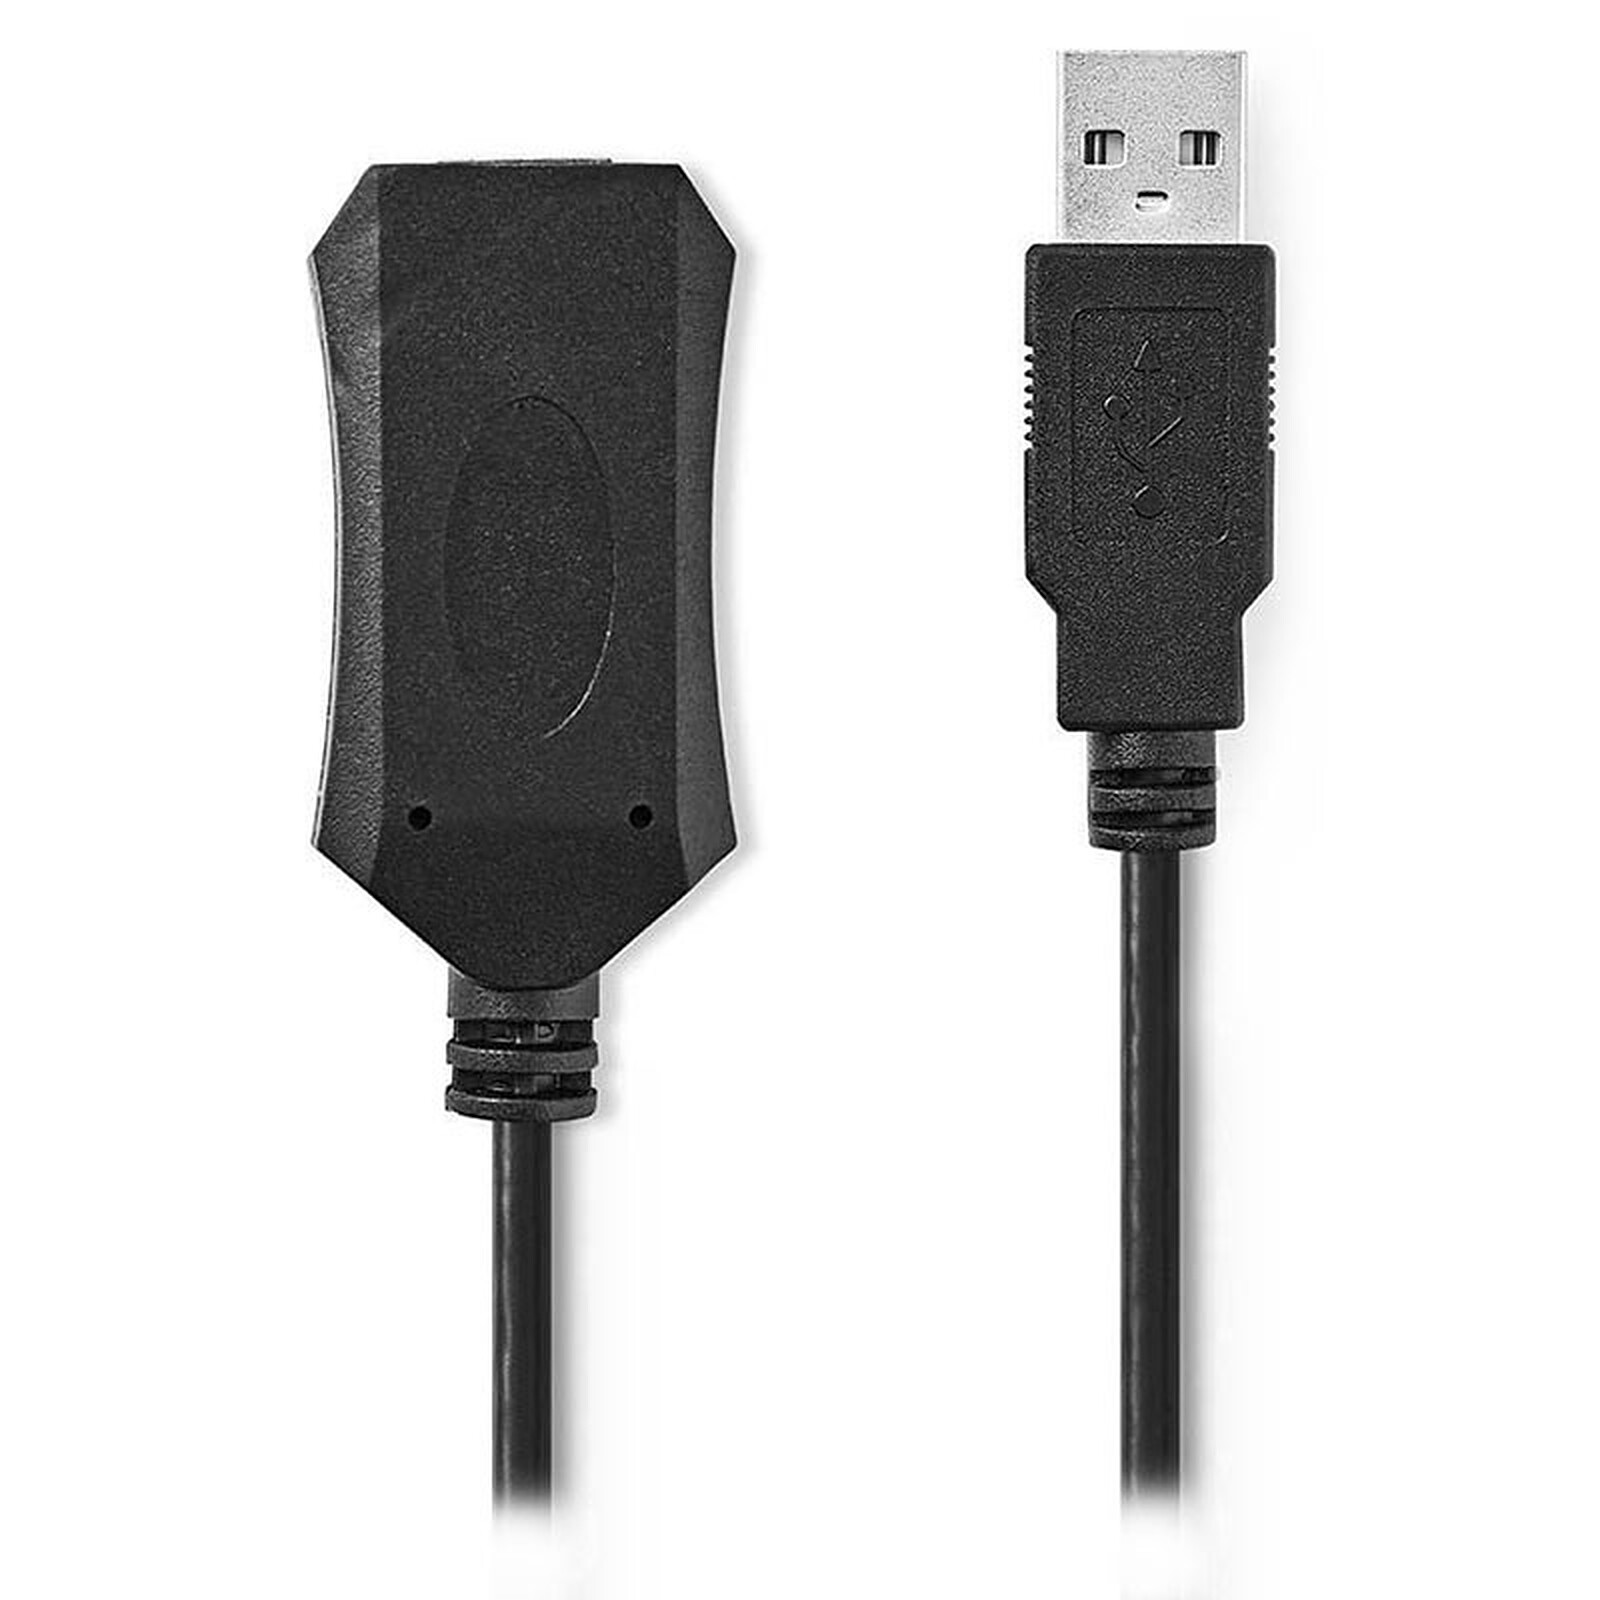 Cable USB 2.0 de Extensión Alargador Activo de 5 metros - Macho a Hembra